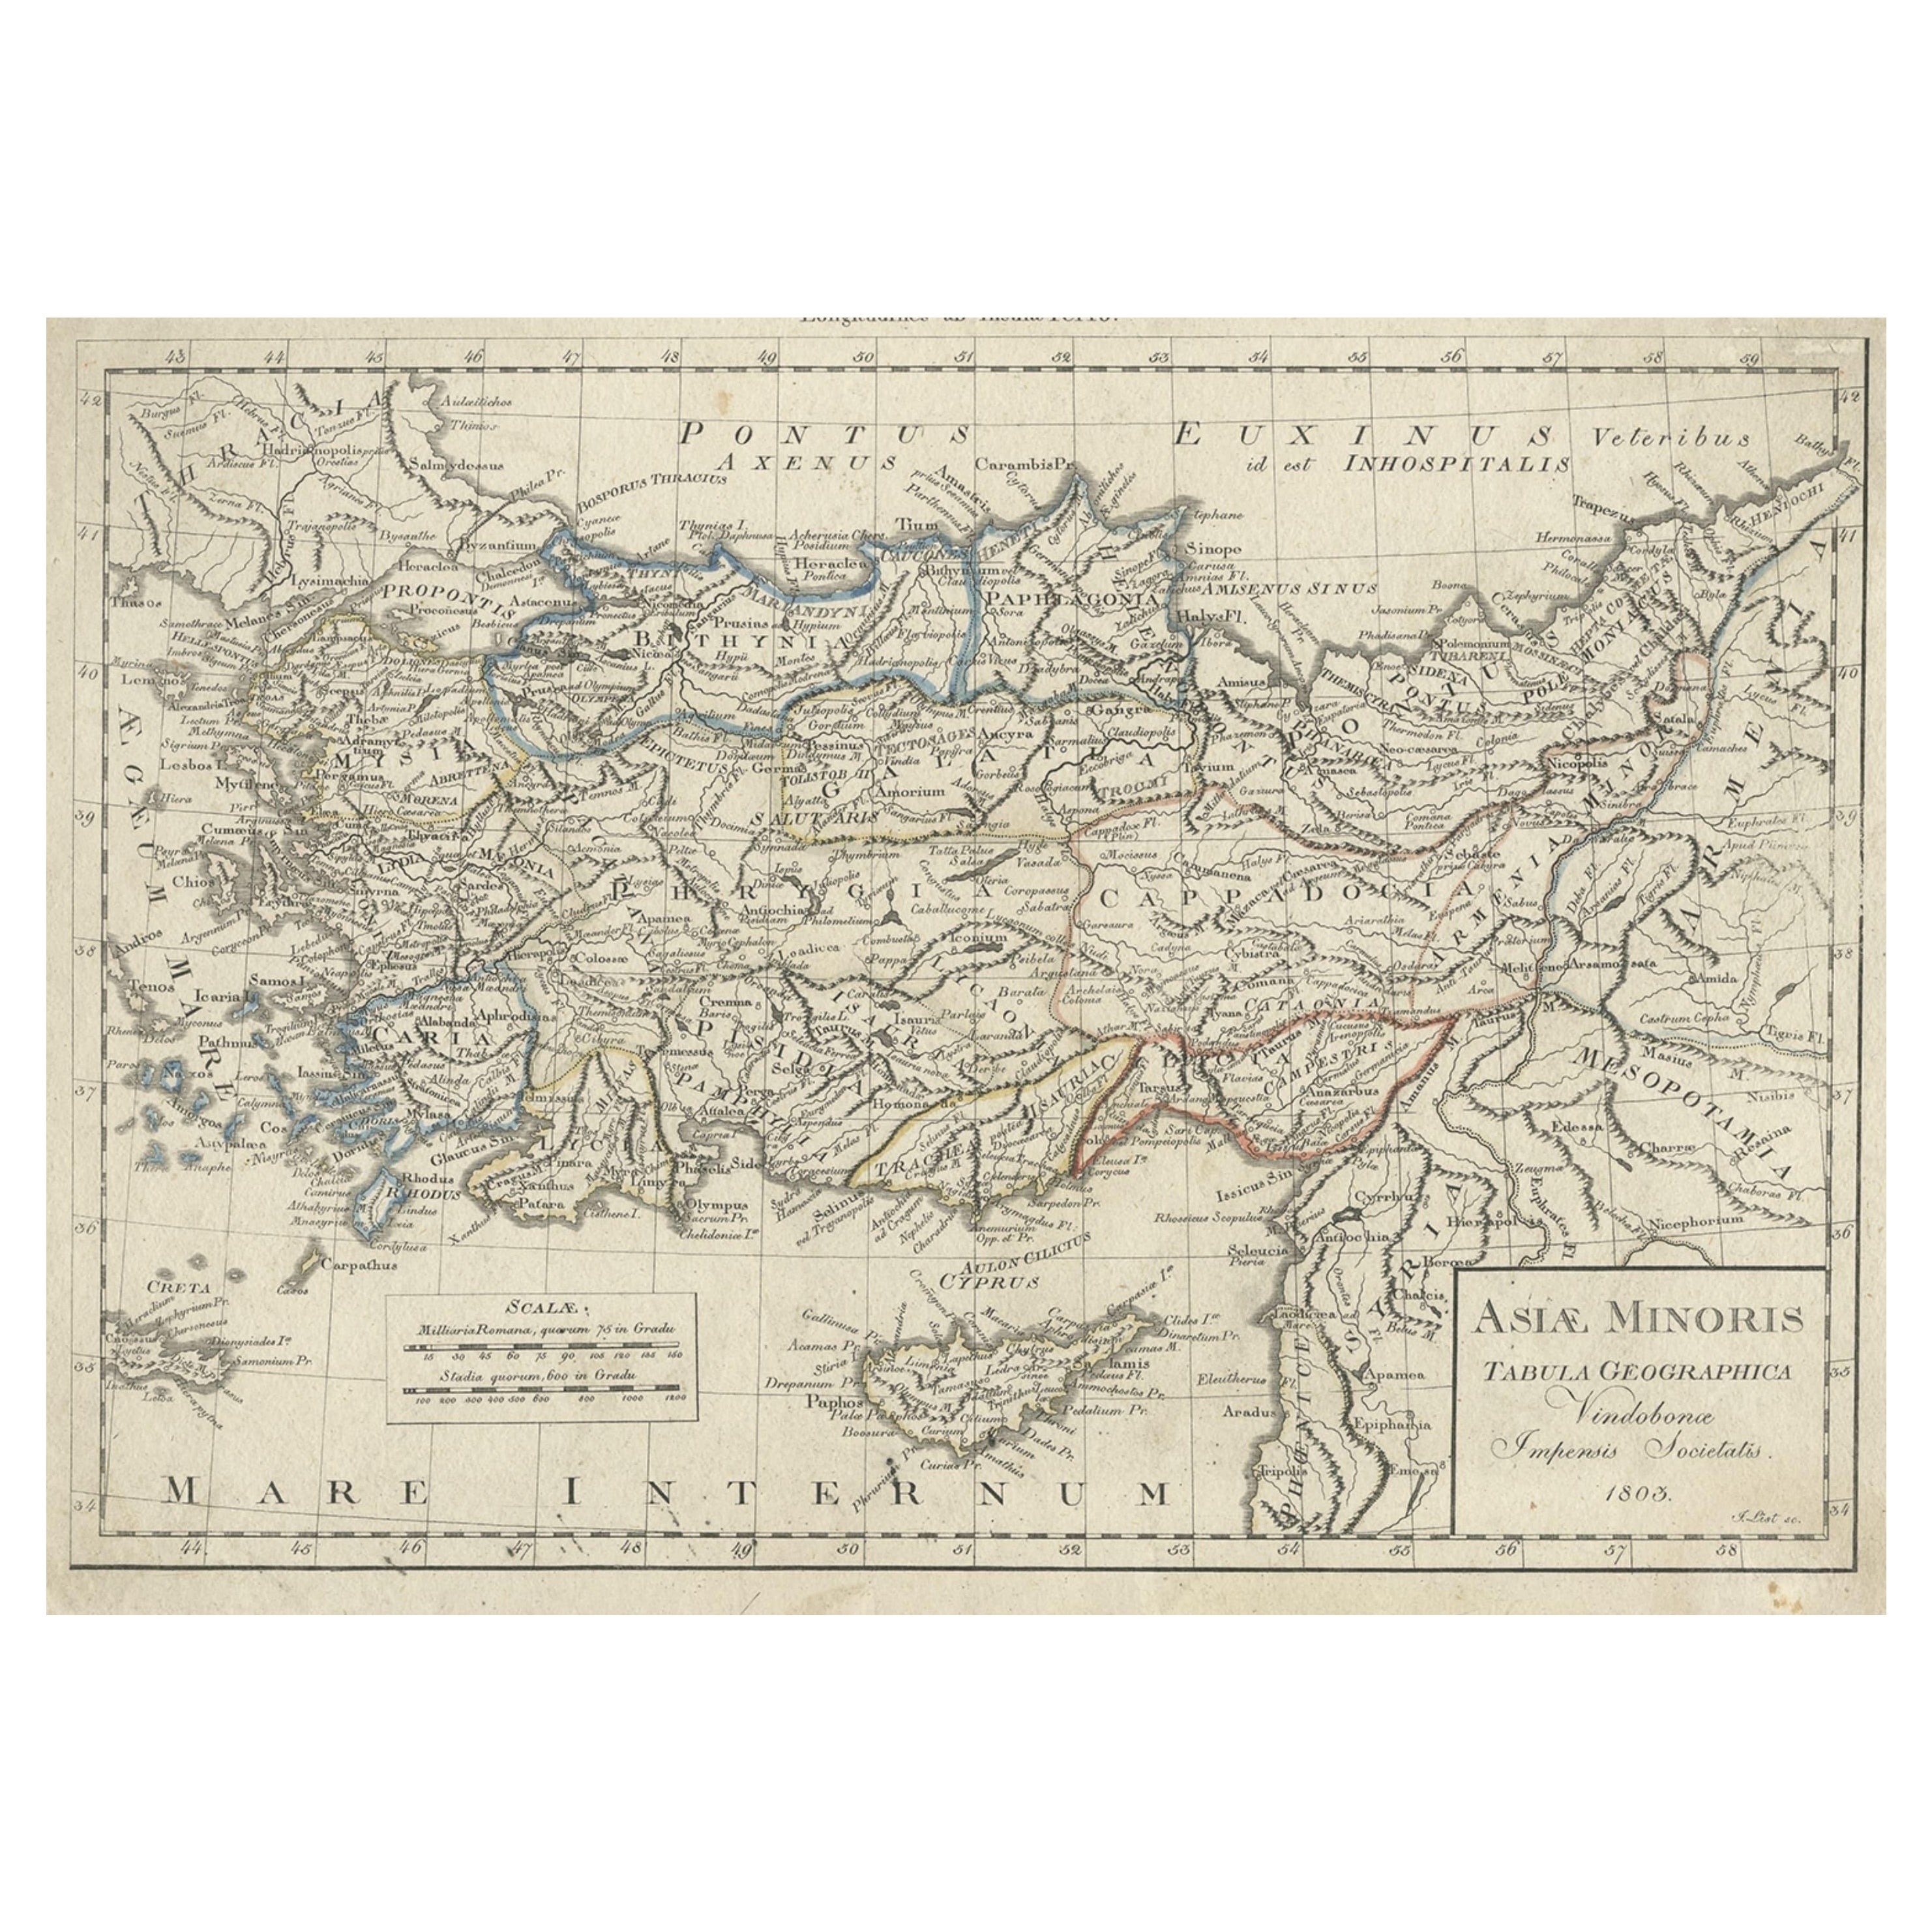 Carte ancienne d'Asie mineure, Turquie et Cyprus d'aujourd'hui, 1803